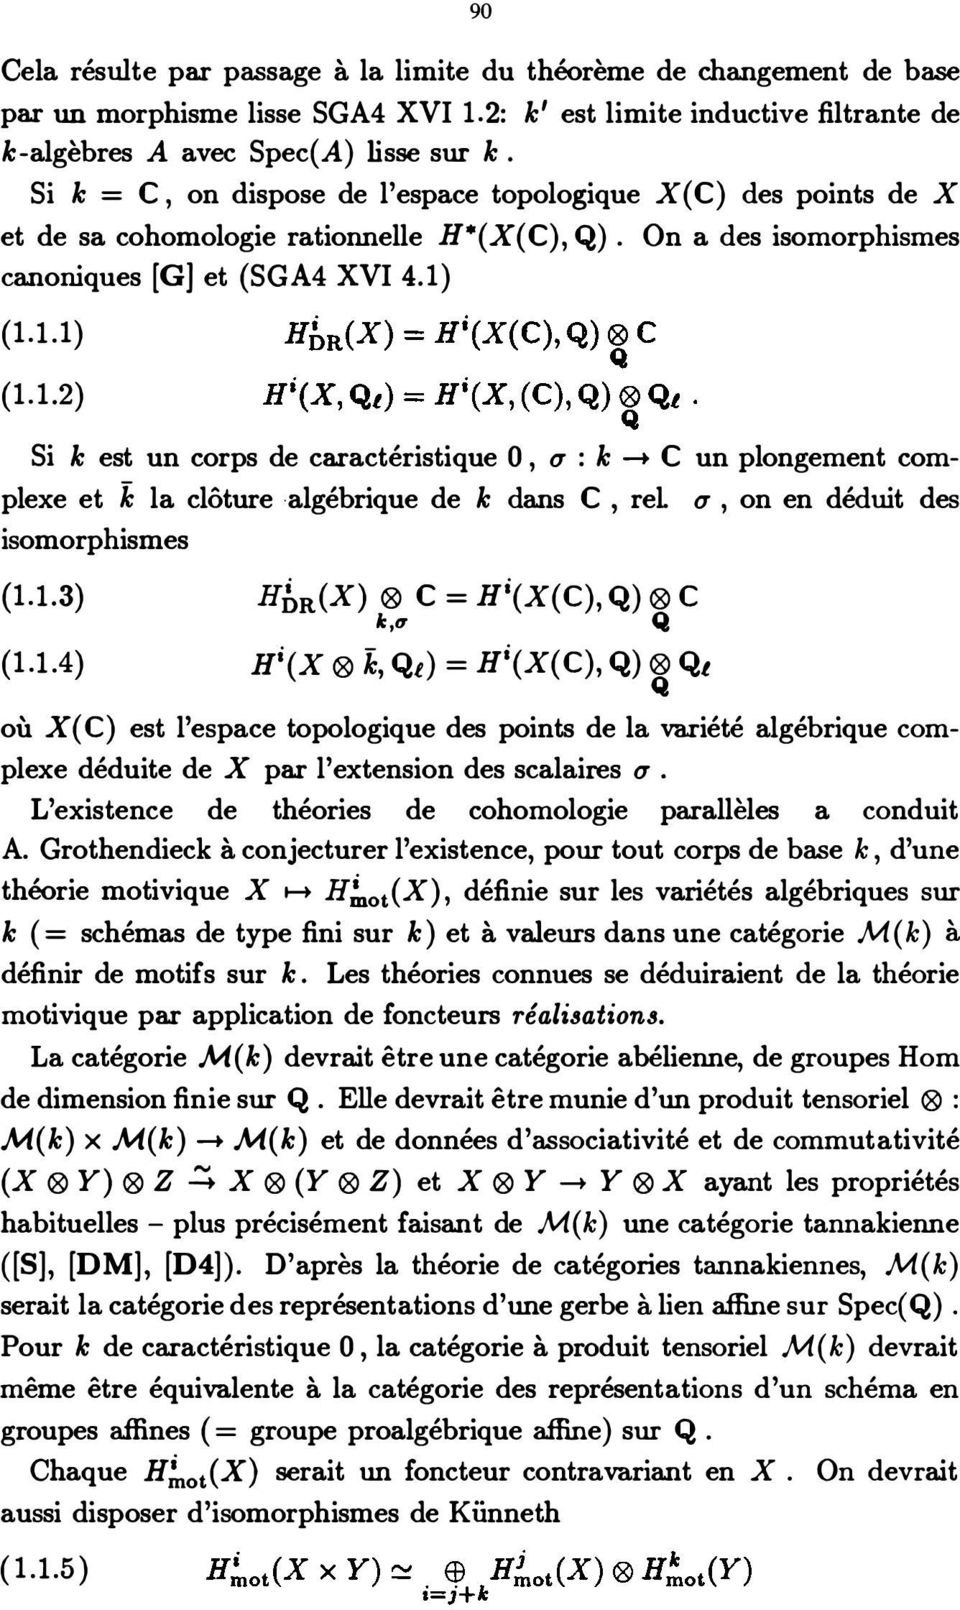 (1.1.1) (1.1.2) Si k est un corps de caractéristique 0, u : k --+ C un plongement com plexe et k la clôture algébrique de k dans C, rel. u, on en déduit des isomorphismes {1.1.3) C = Hi(X(C), Q) C HbR(X) k,l1 Q (1.